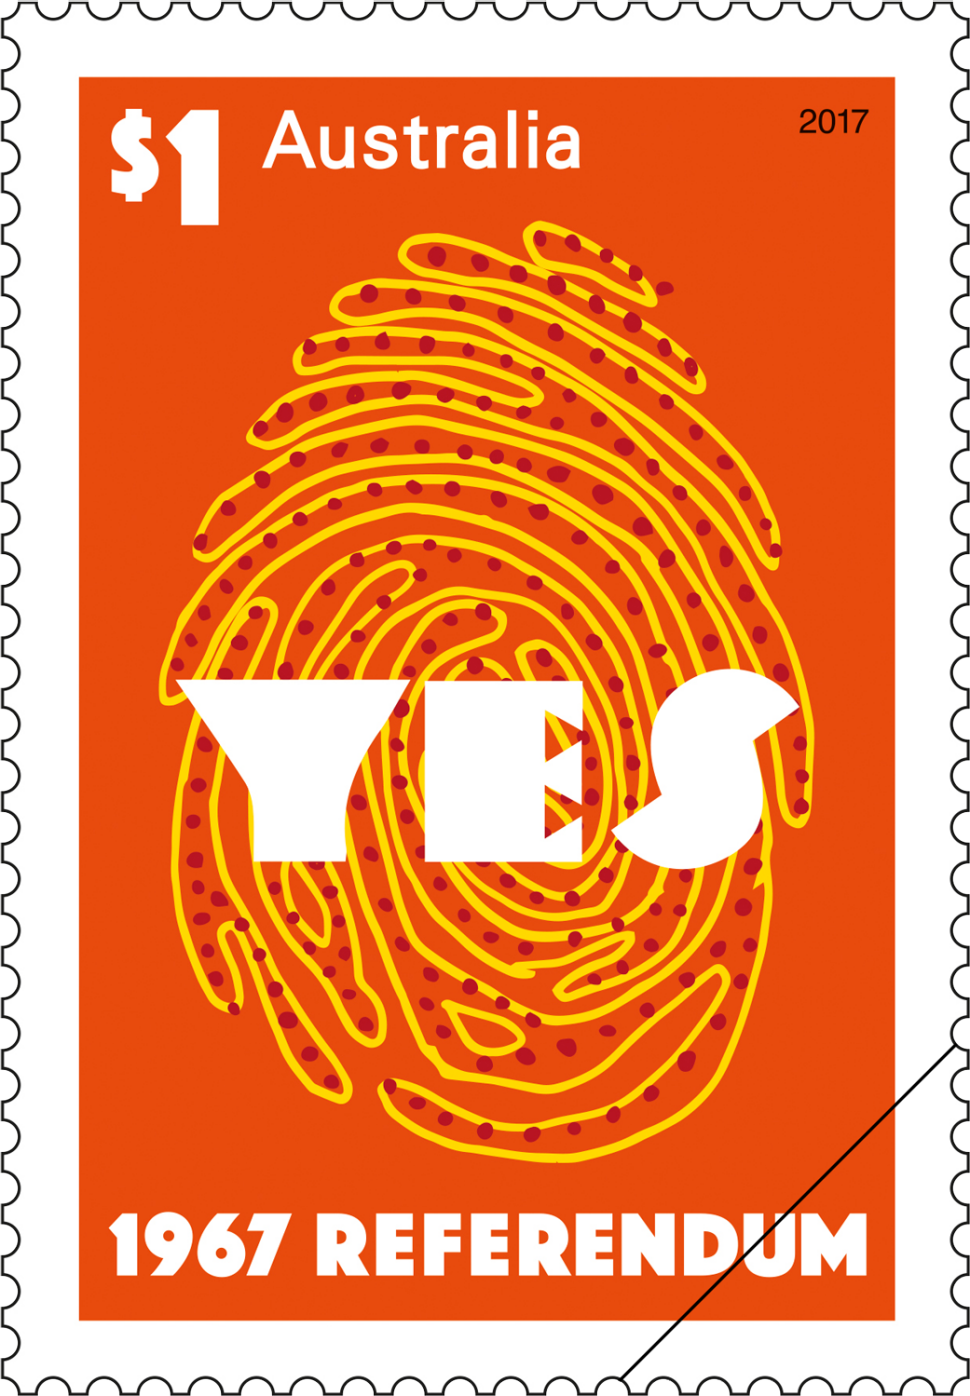 1967-referendum-australia-post